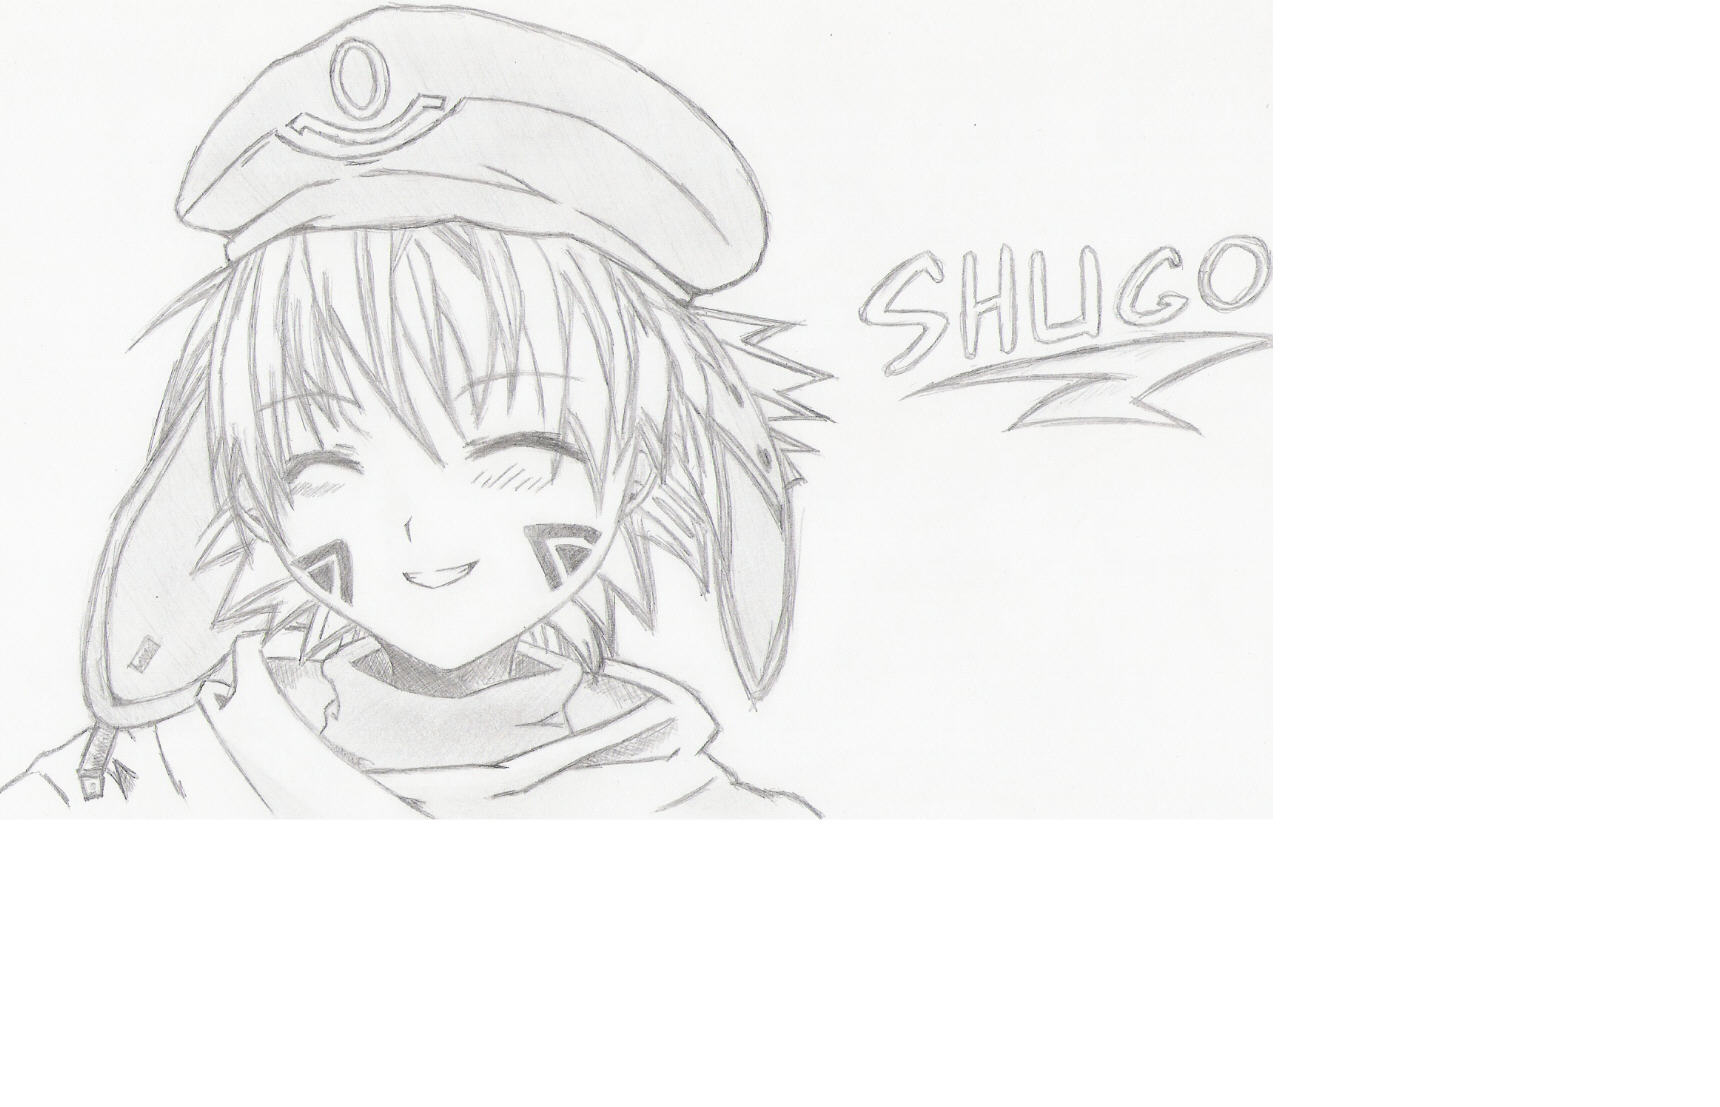 Smiling Shugo, Original B&W by NekoRaven